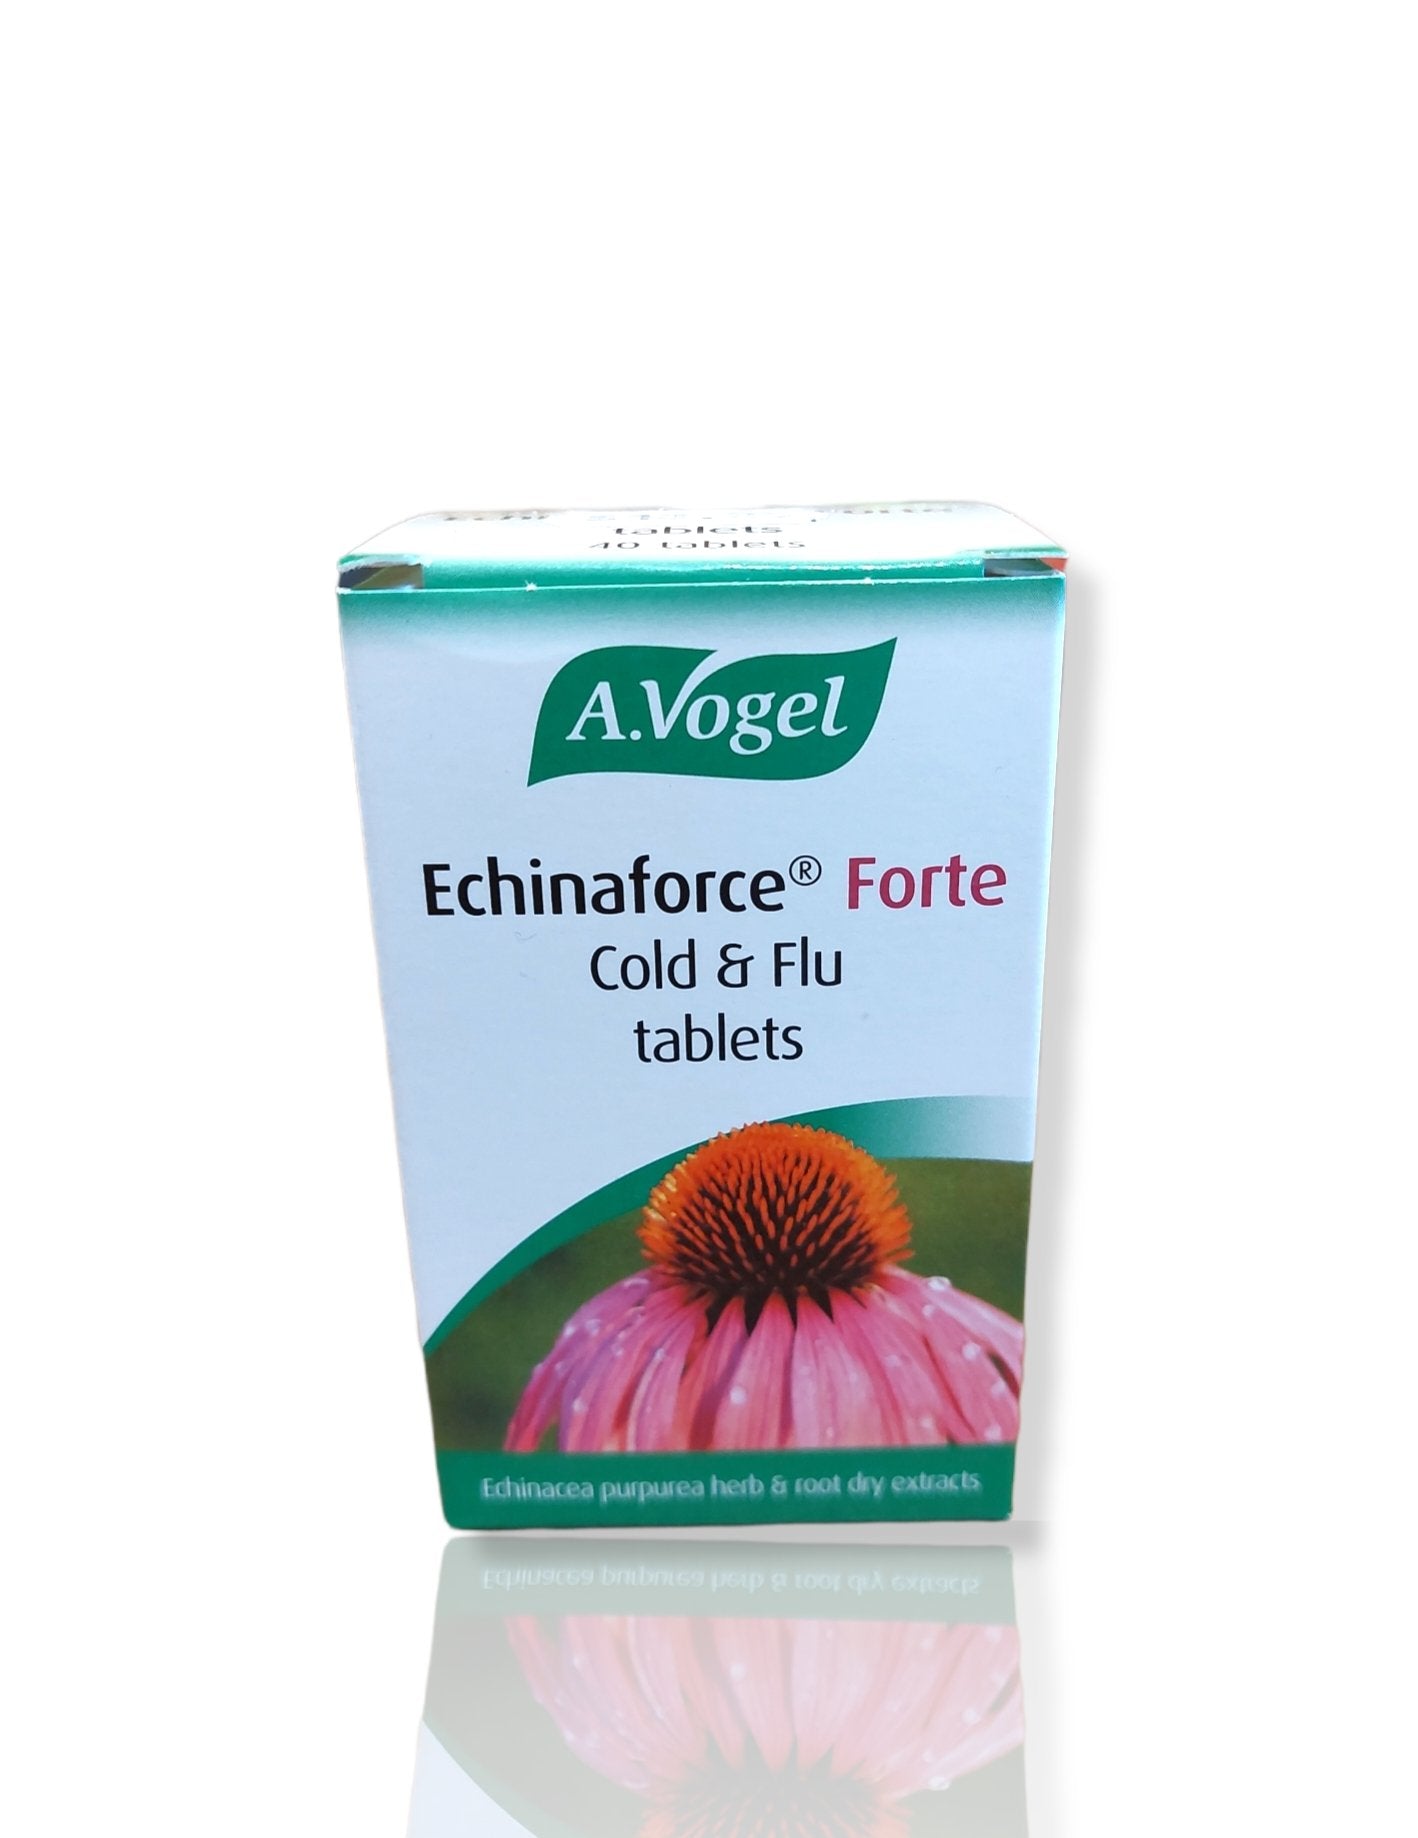 Vogel Echinaforce Forte 40tabs - HealthyLiving.ie